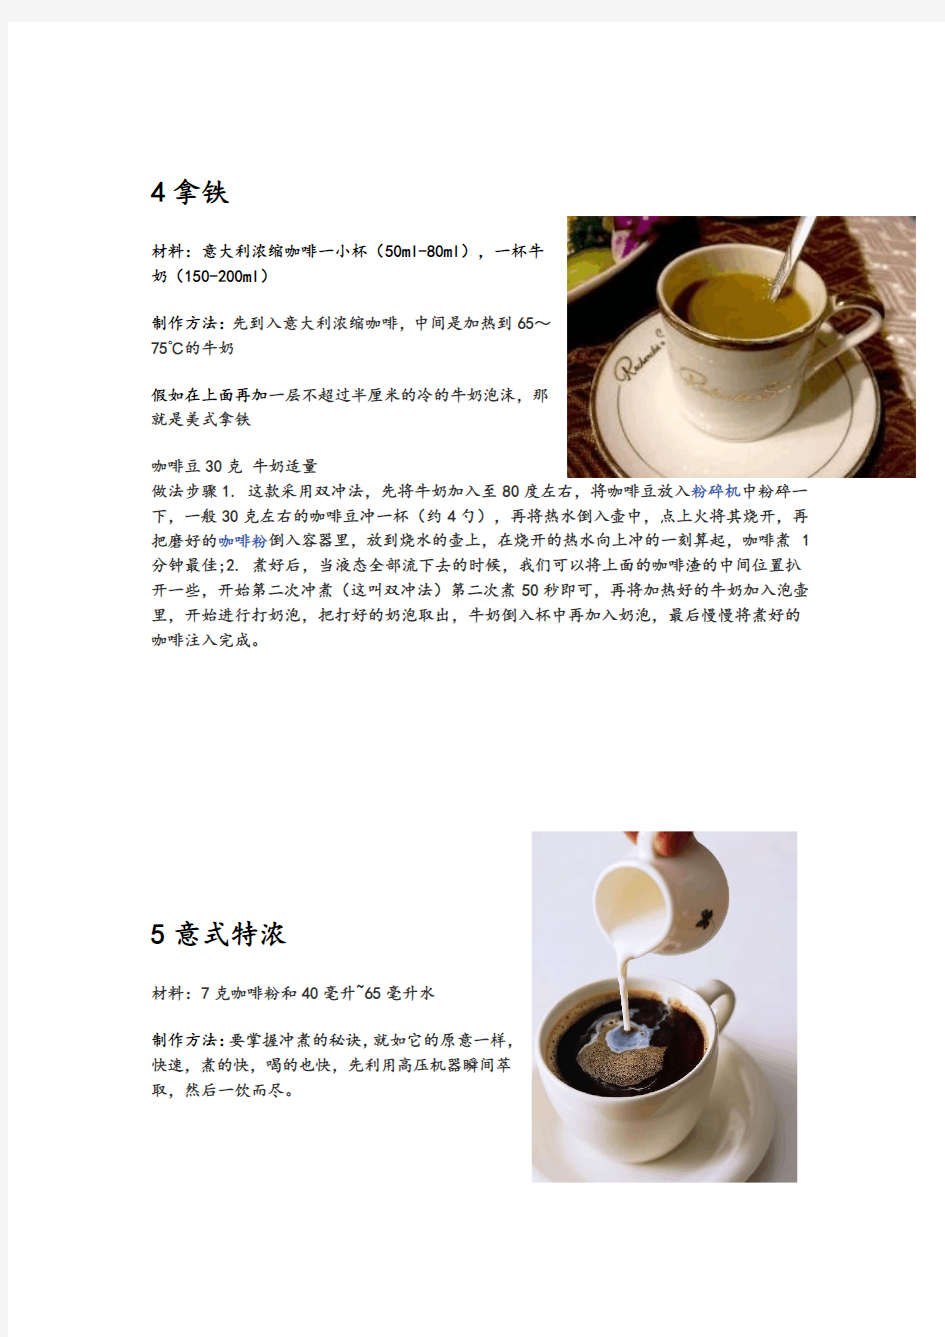 花式咖啡品种及做法